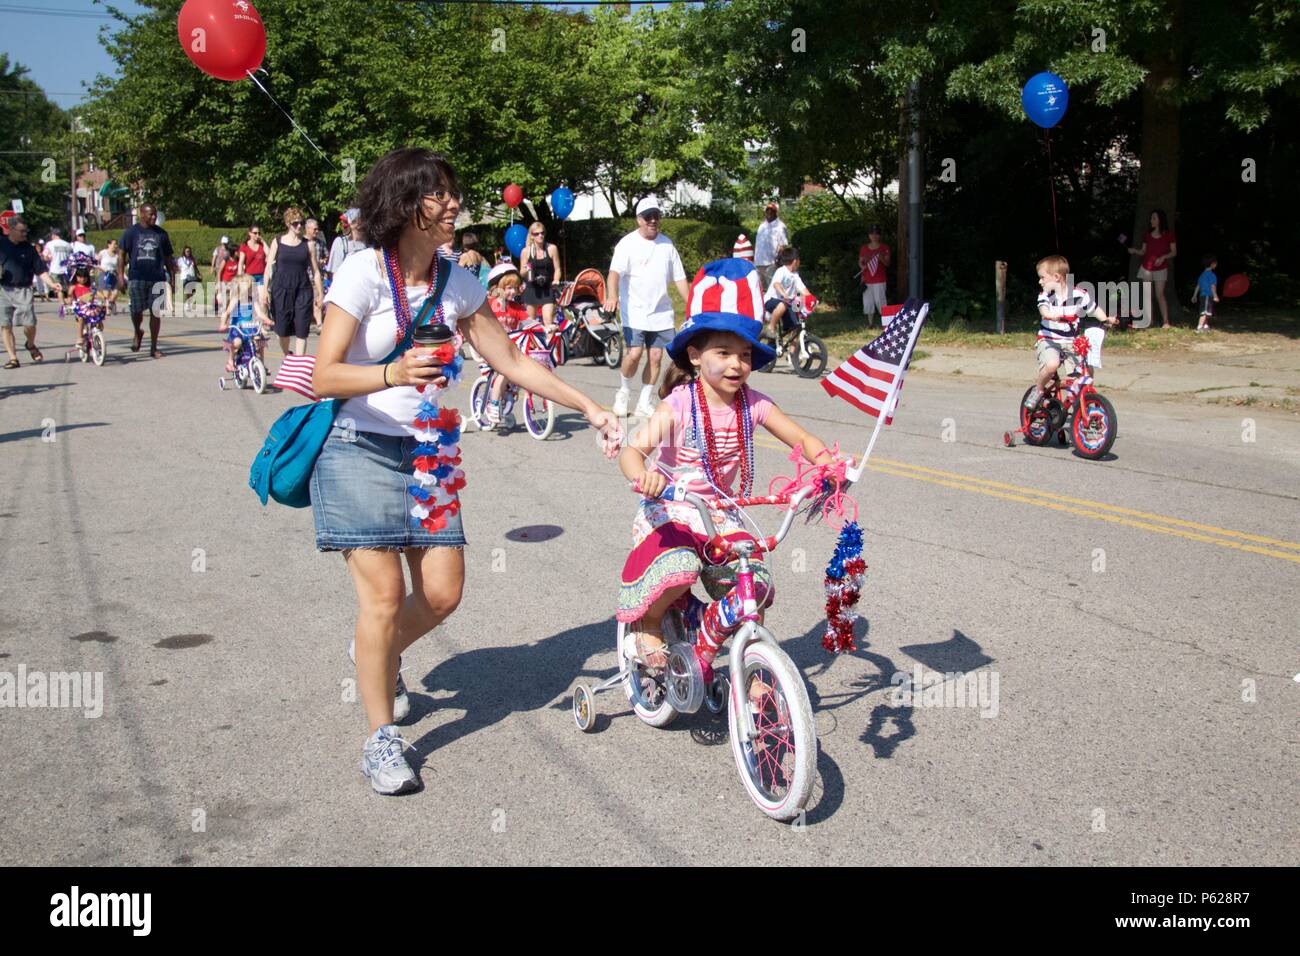 Philadelphia, PA, USA - Julio 4, 2012: Las familias celebran el Día de la independencia de América con una decoración infantil anual desfile de bicicletas en Filadelfia Foto de stock